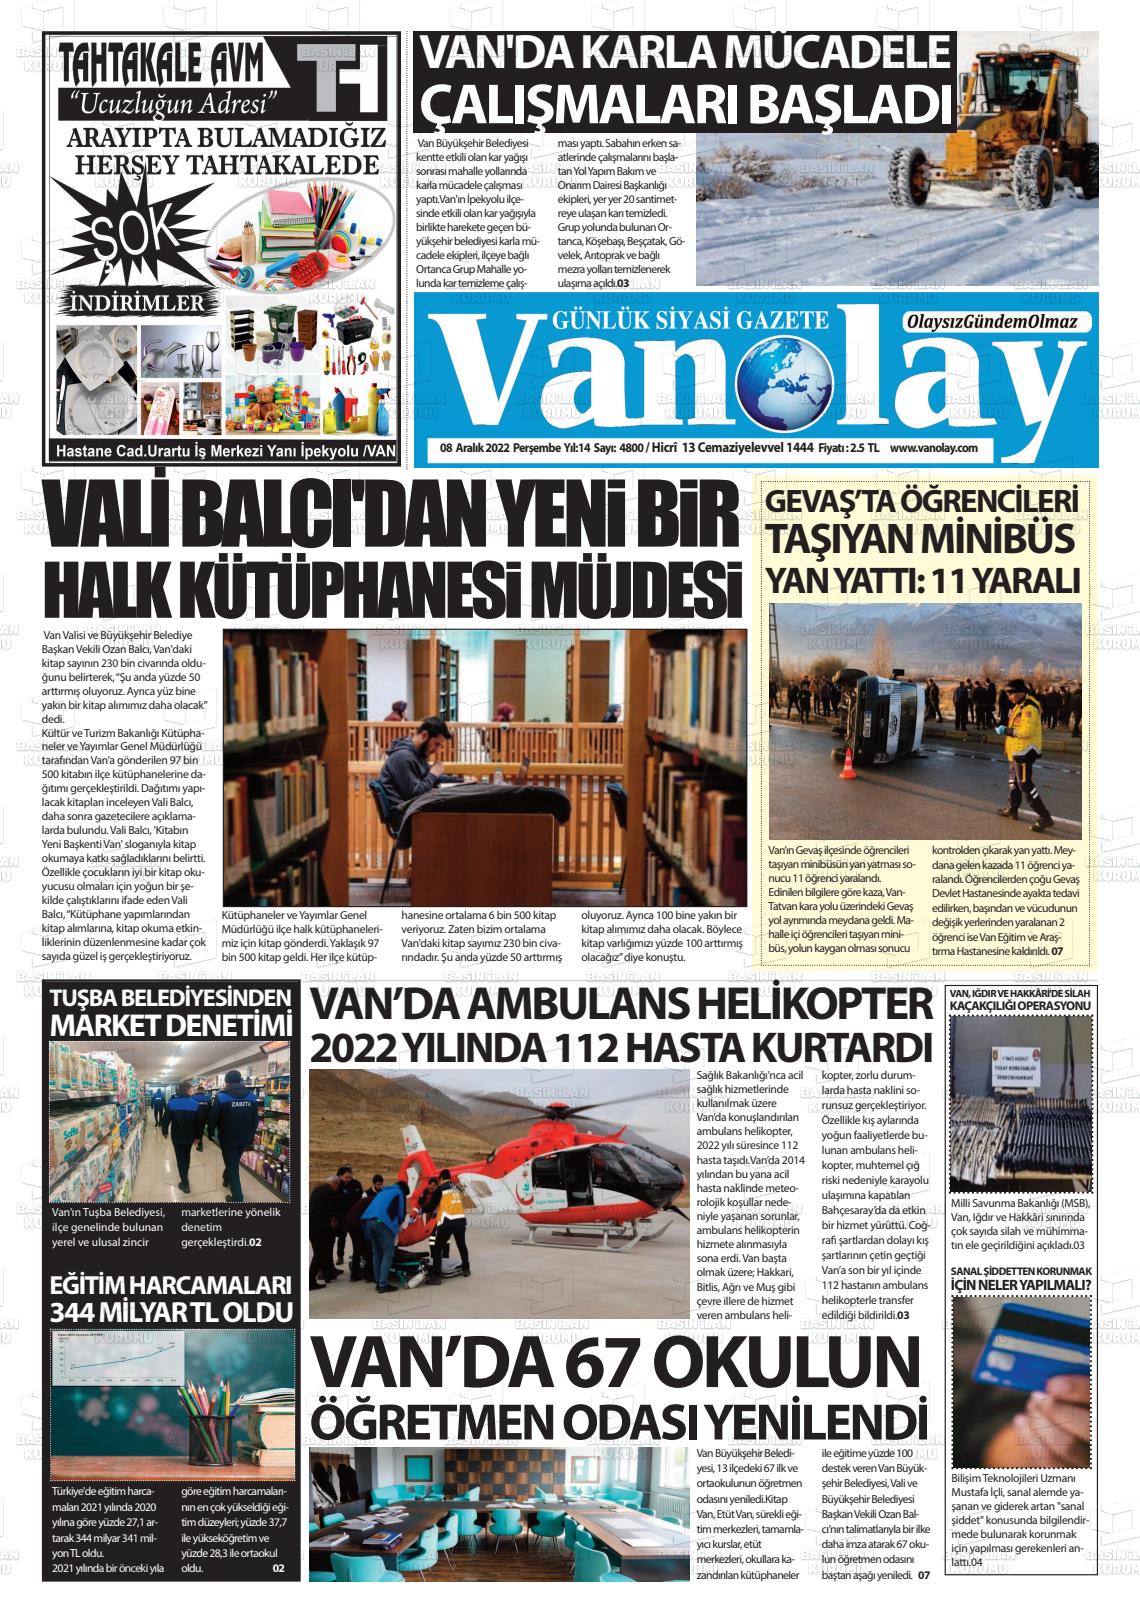 08 Aralık 2022 Van Olay Gazete Manşeti